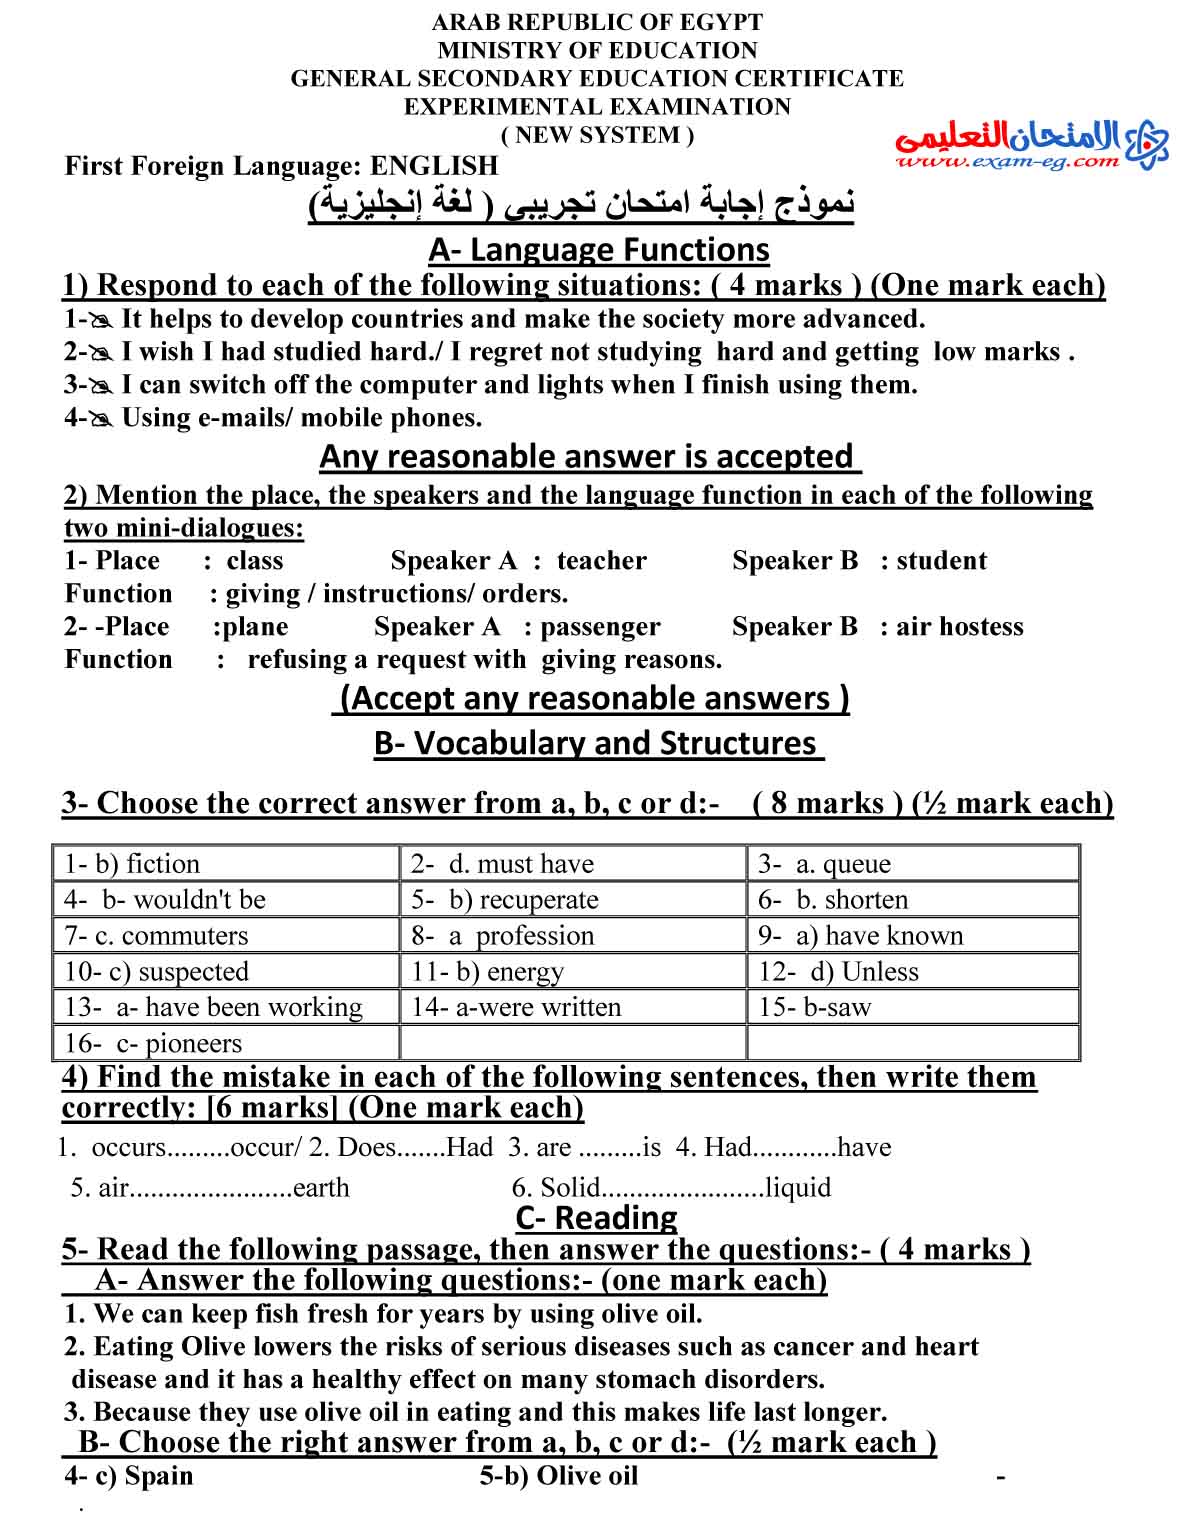 اجابة لغة انجليزية 2 - الامتحان التعليمى-1